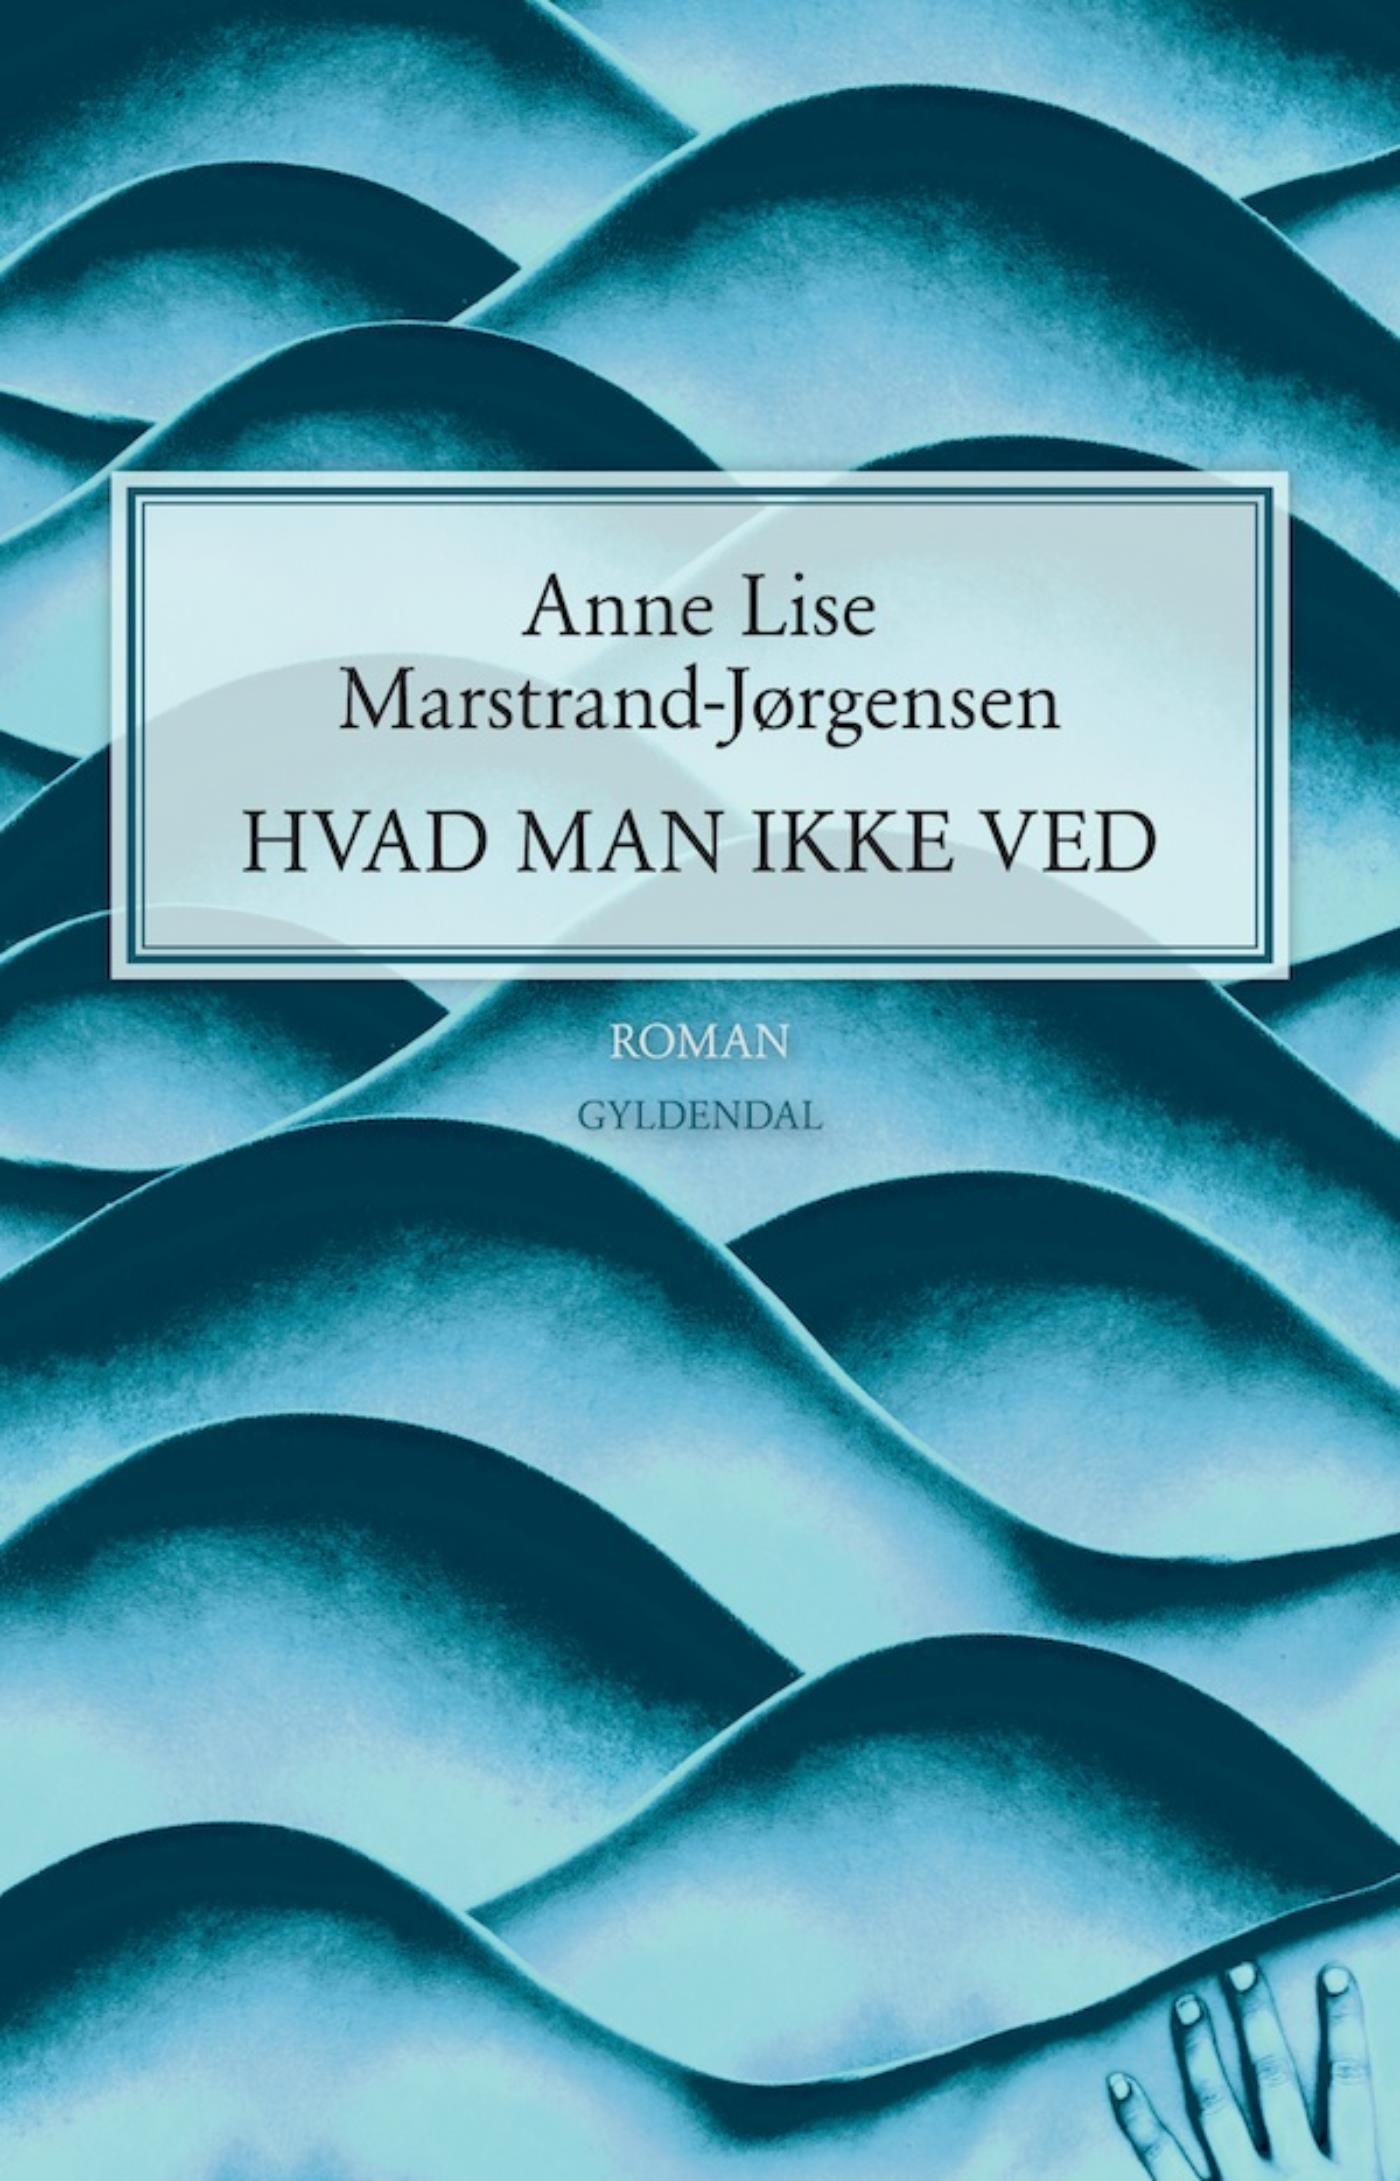 Hvad man ikke ved, e-bog af Anne Lise Marstrand-Jørgensen